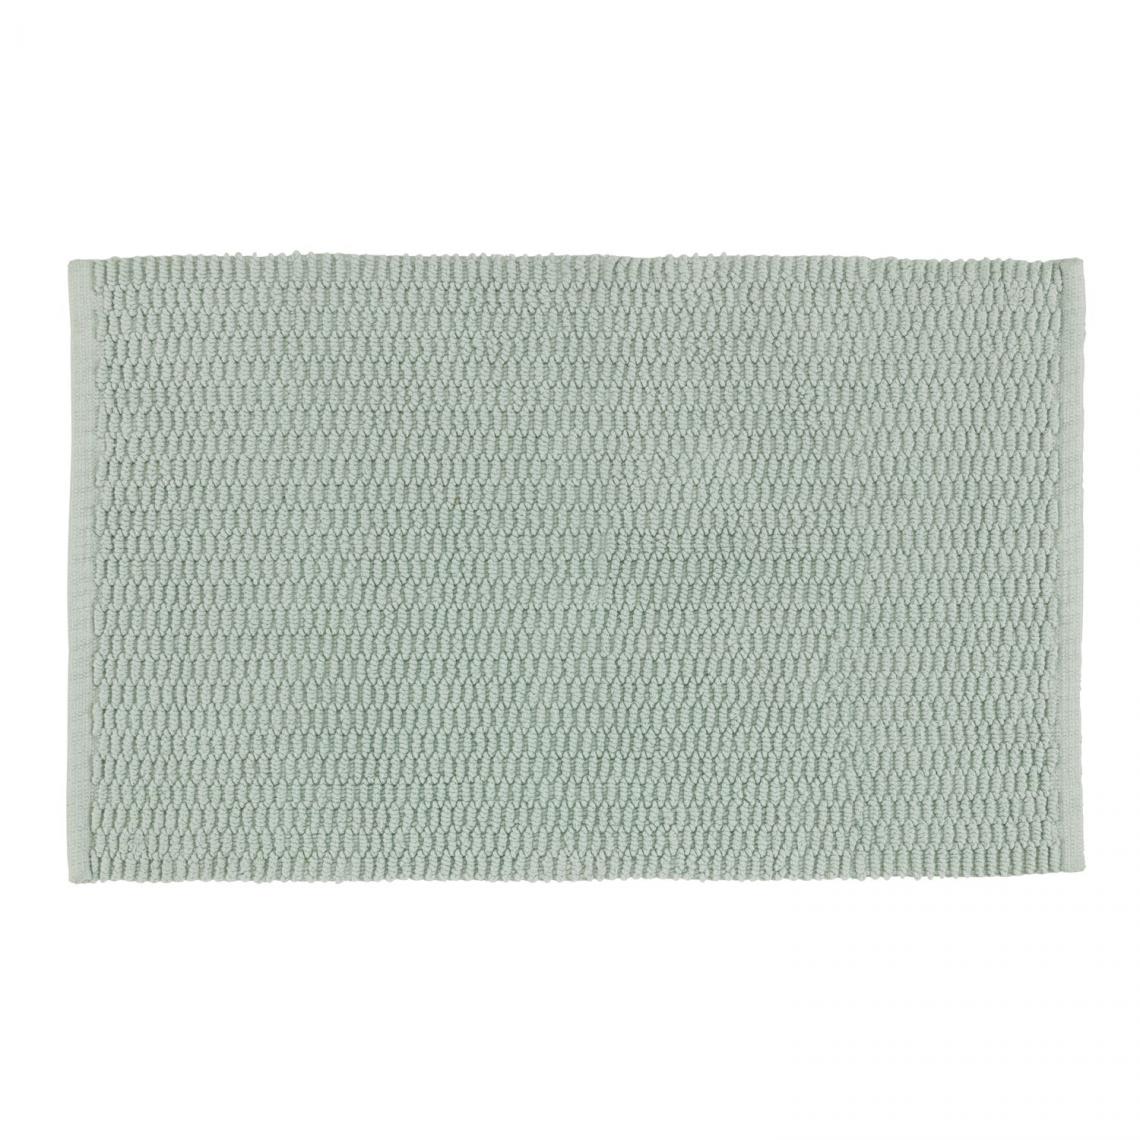 Wenko - Tapis de salle de bain en coton Mona - L. 50 x l. 80 cm - Vert clair - Tapis